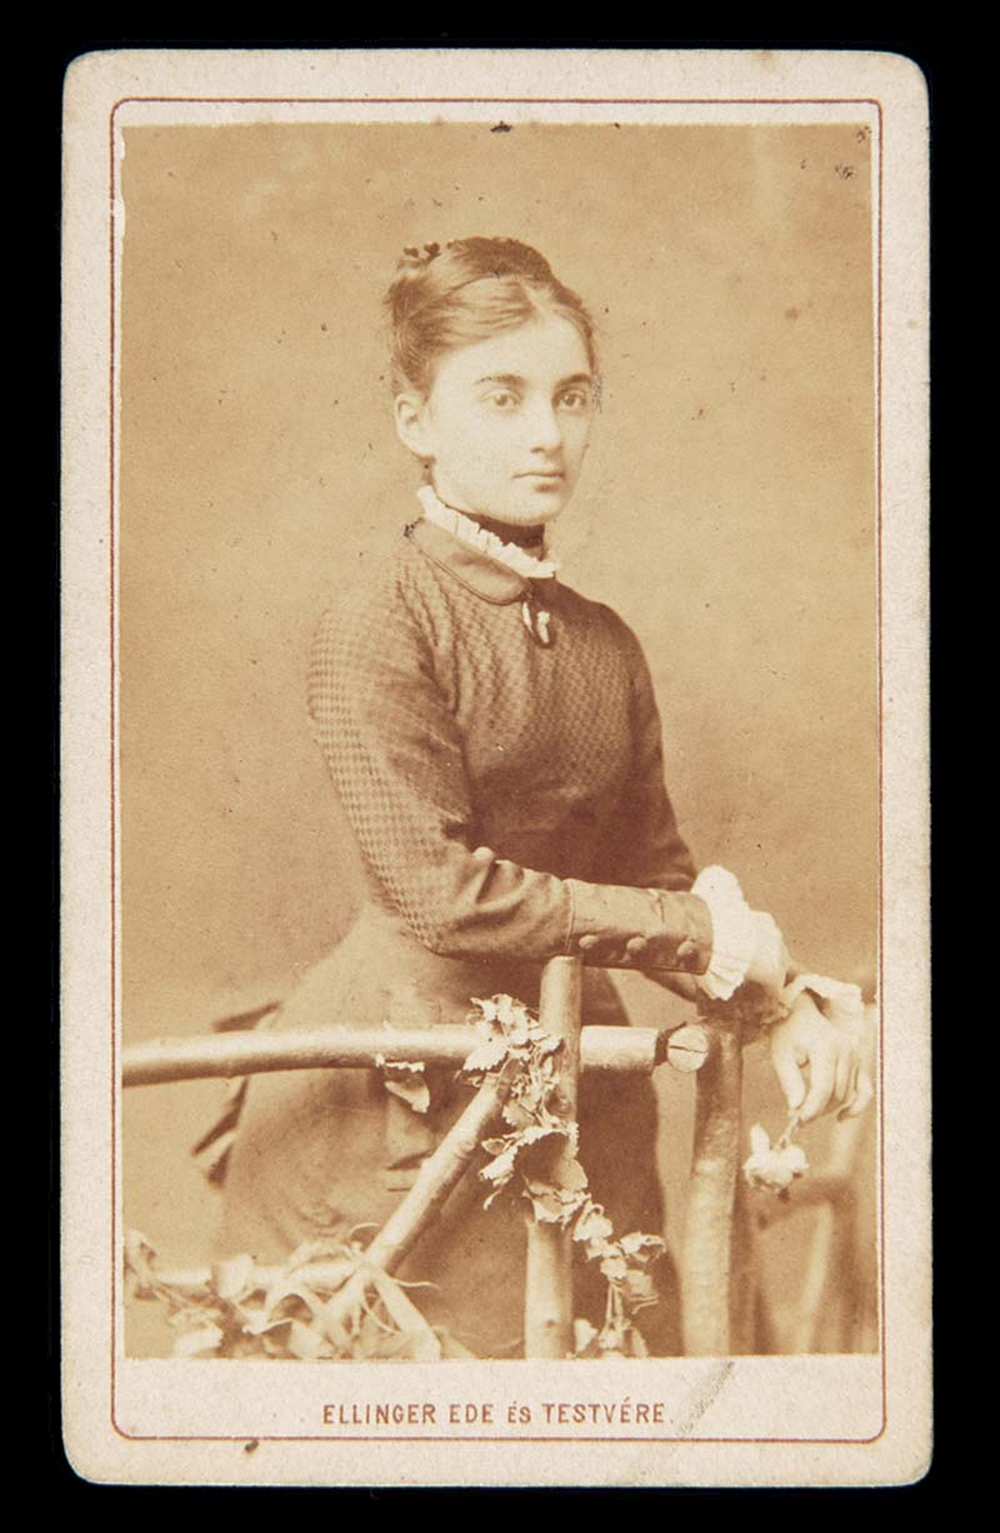 Ellinger Ede és testvére: Fiatal nő háromnegyed-alakos műtermi állóképe. Jelzet FTA 189. – Történeti Fénykép- és Videótár